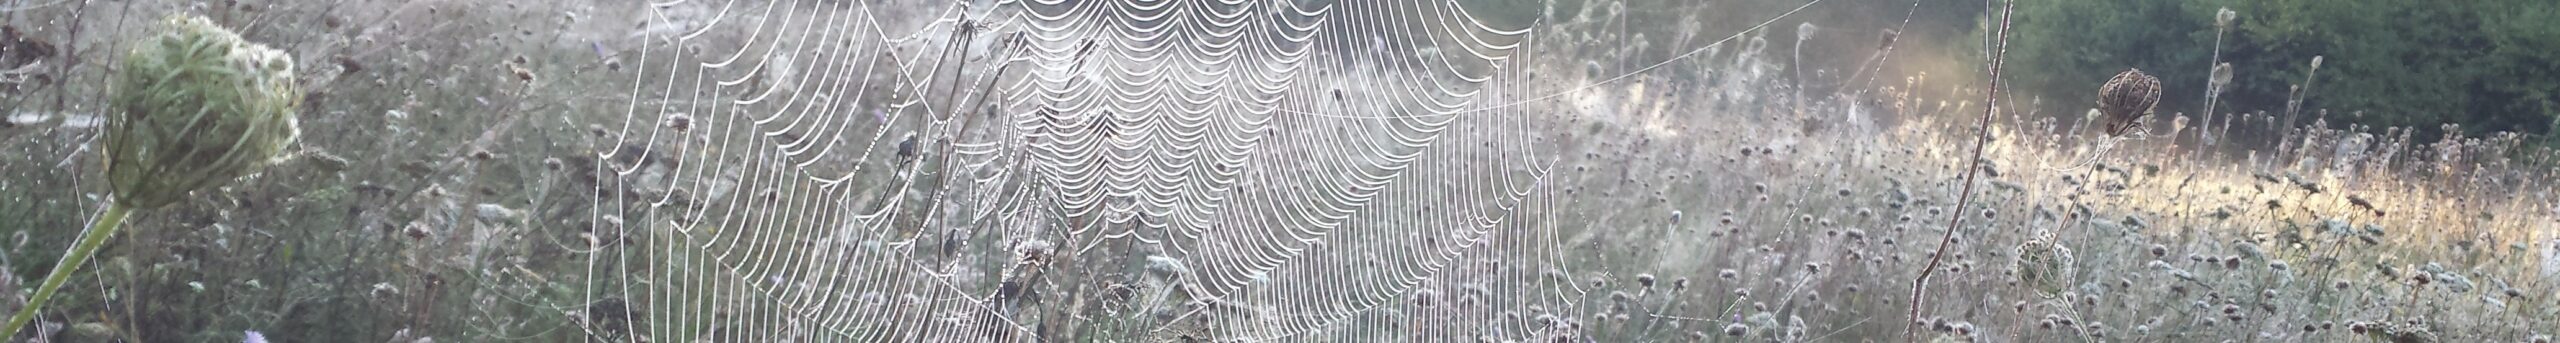 Spinnennetz Radspinner